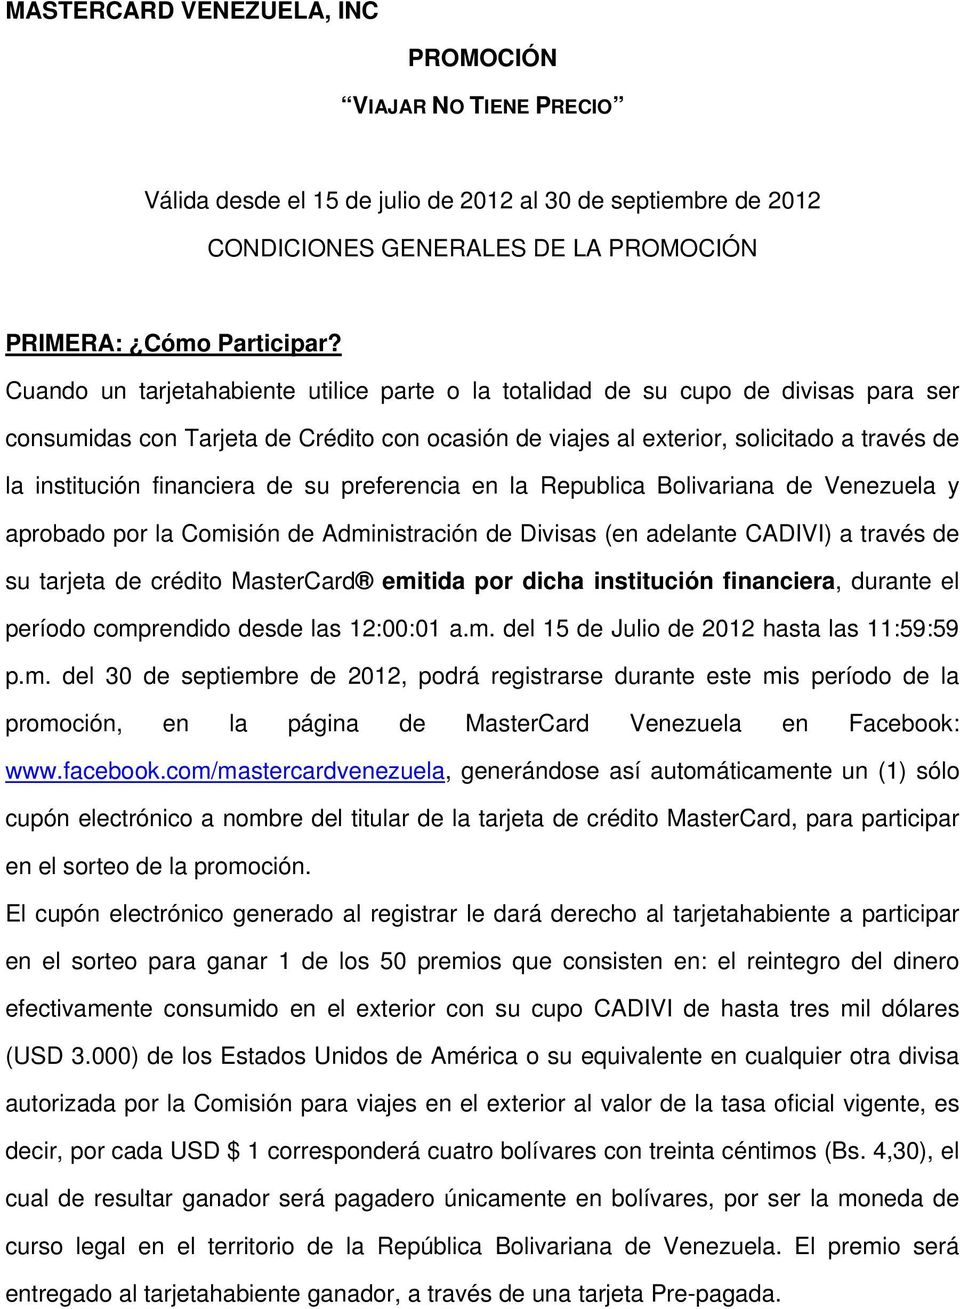 financiera de su preferencia en la Republica Bolivariana de Venezuela y aprobado por la Comisión de Administración de Divisas (en adelante CADIVI) a través de su tarjeta de crédito MasterCard emitida